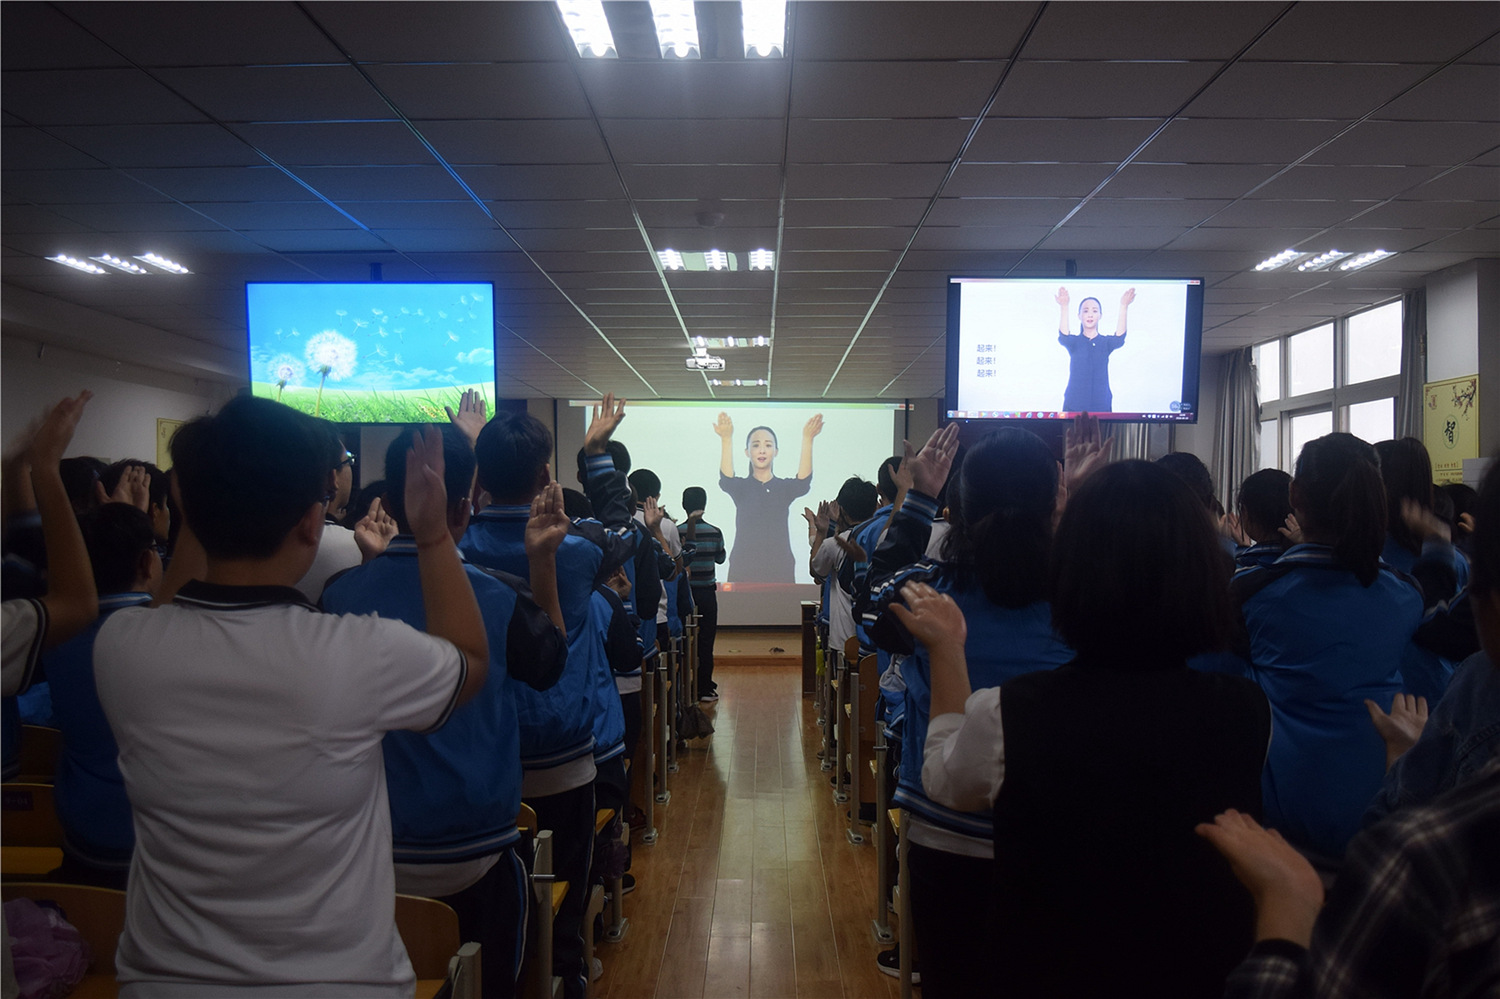 市特教中心组织庆祝国际聋人节暨国歌新手语使用启动仪式